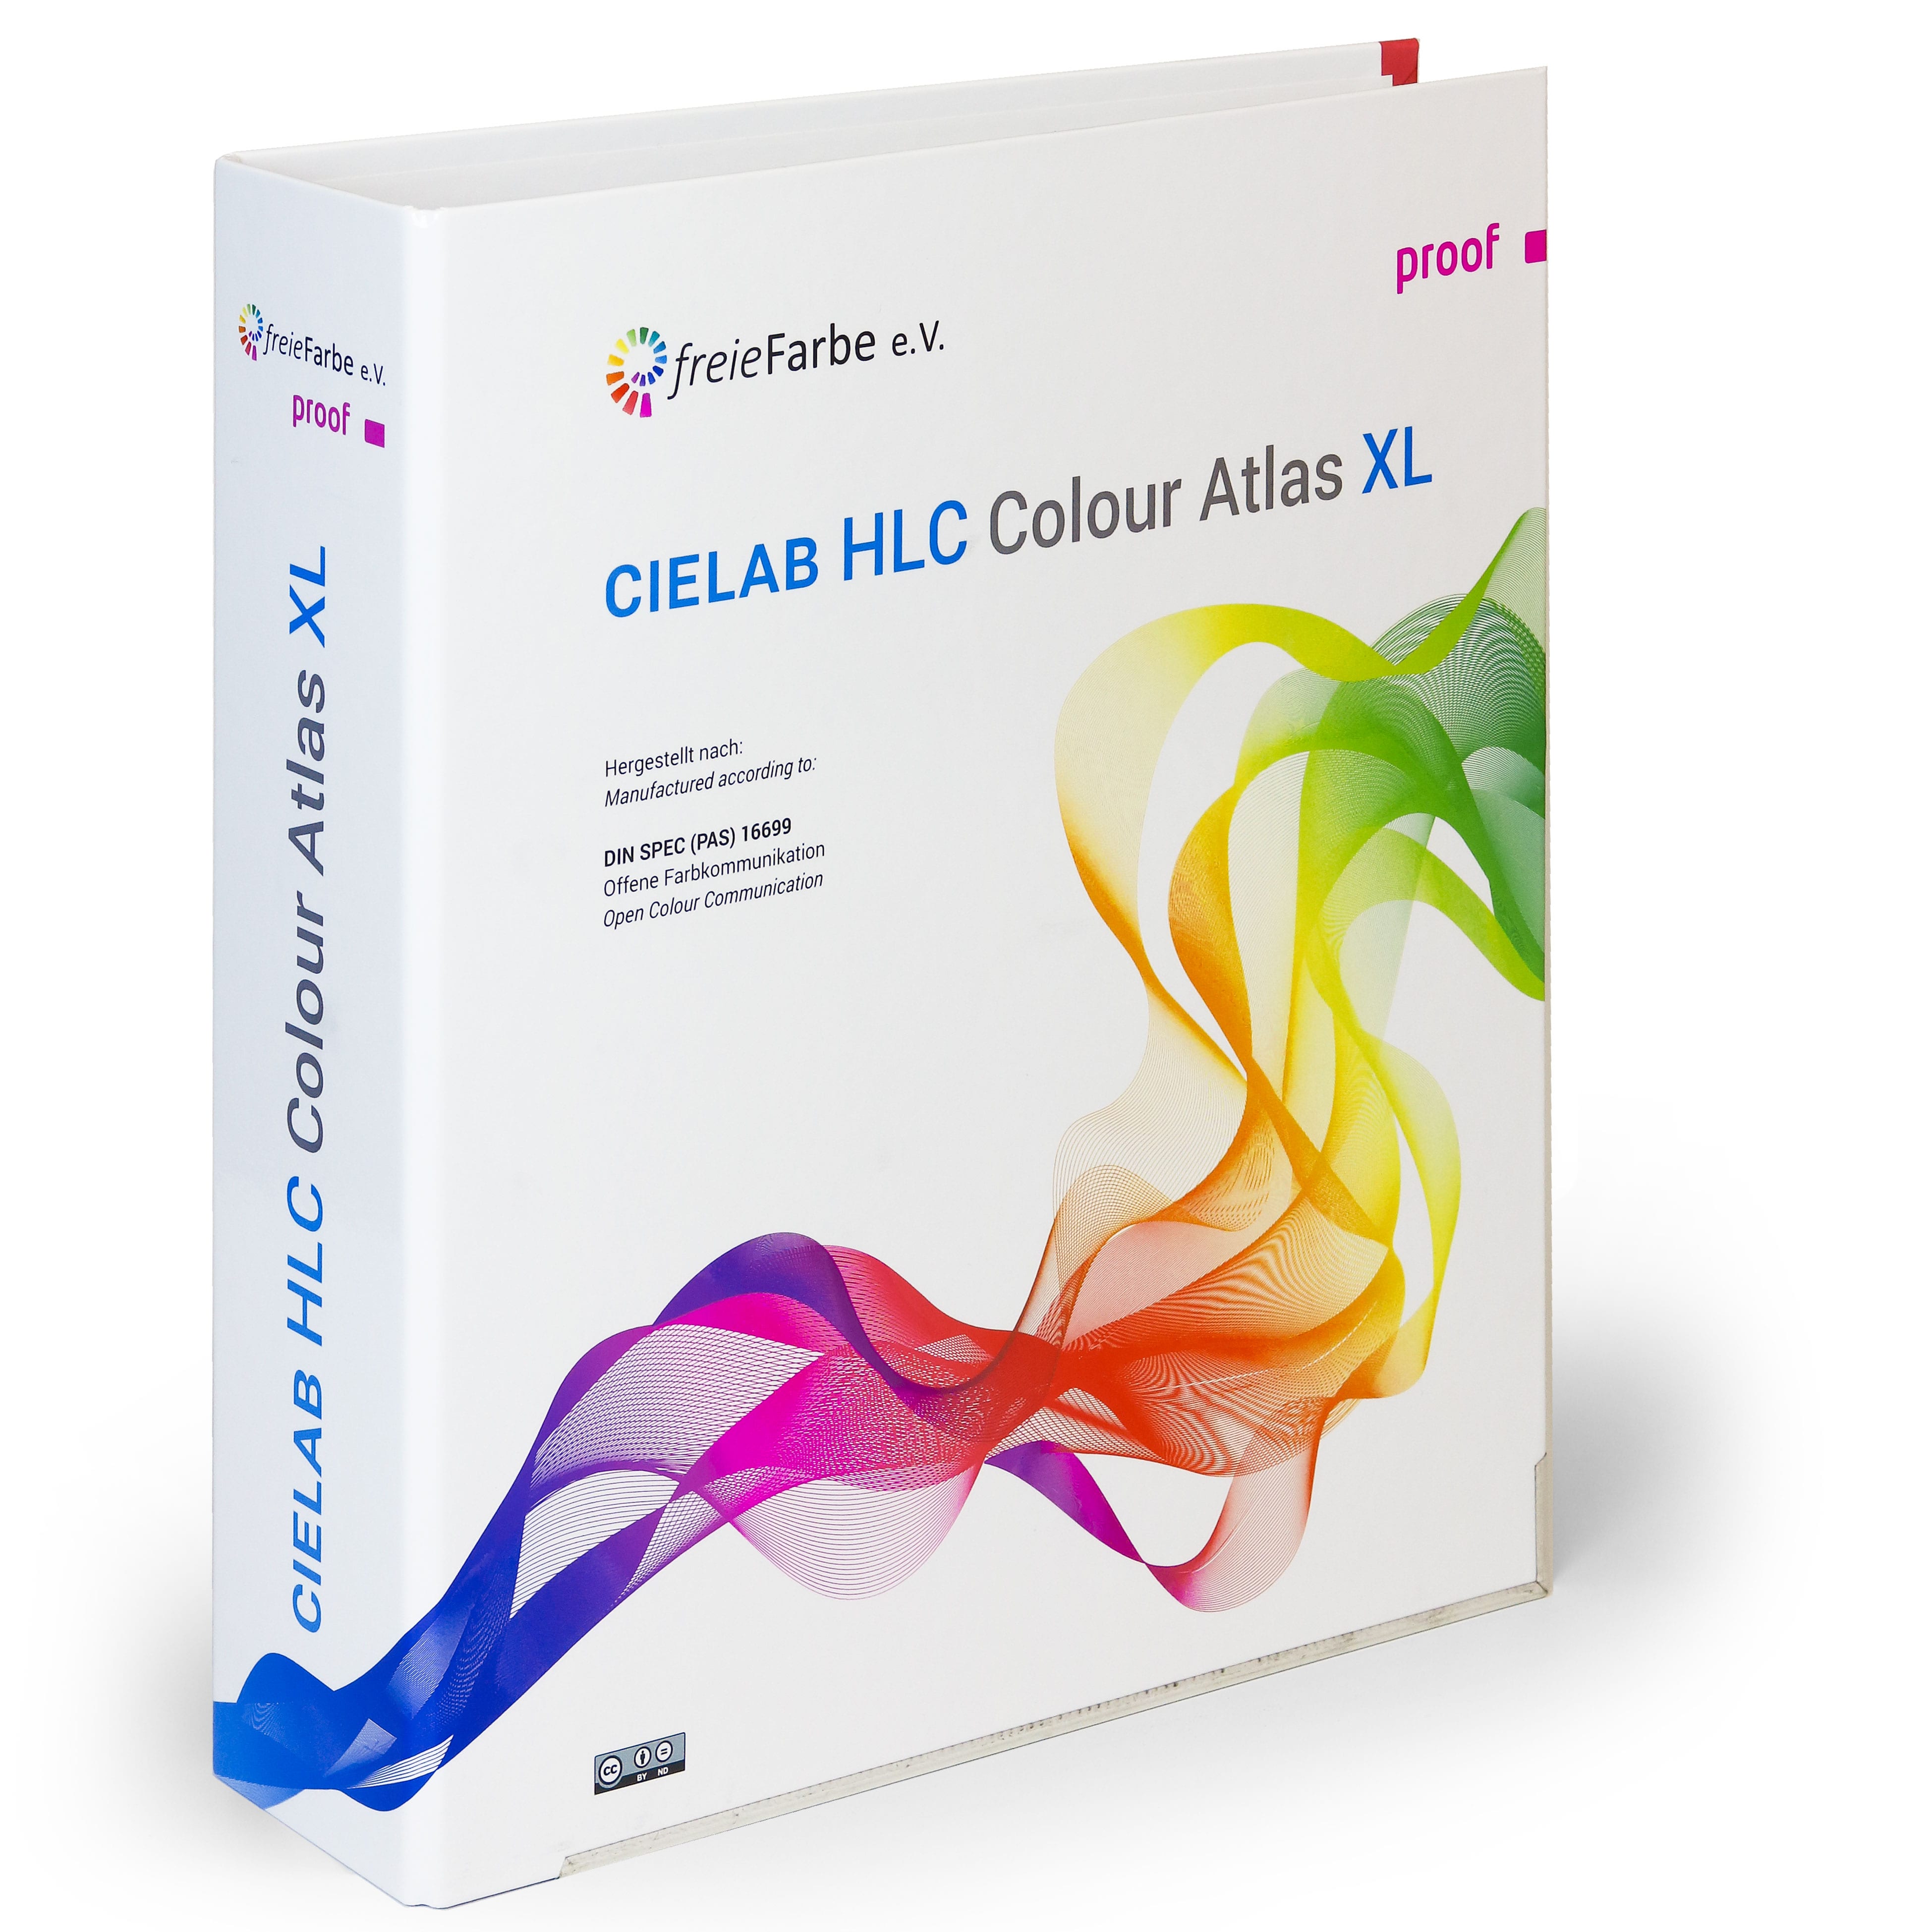 HLC Colour Atlas XL de freieFarbe et Proof GmbH